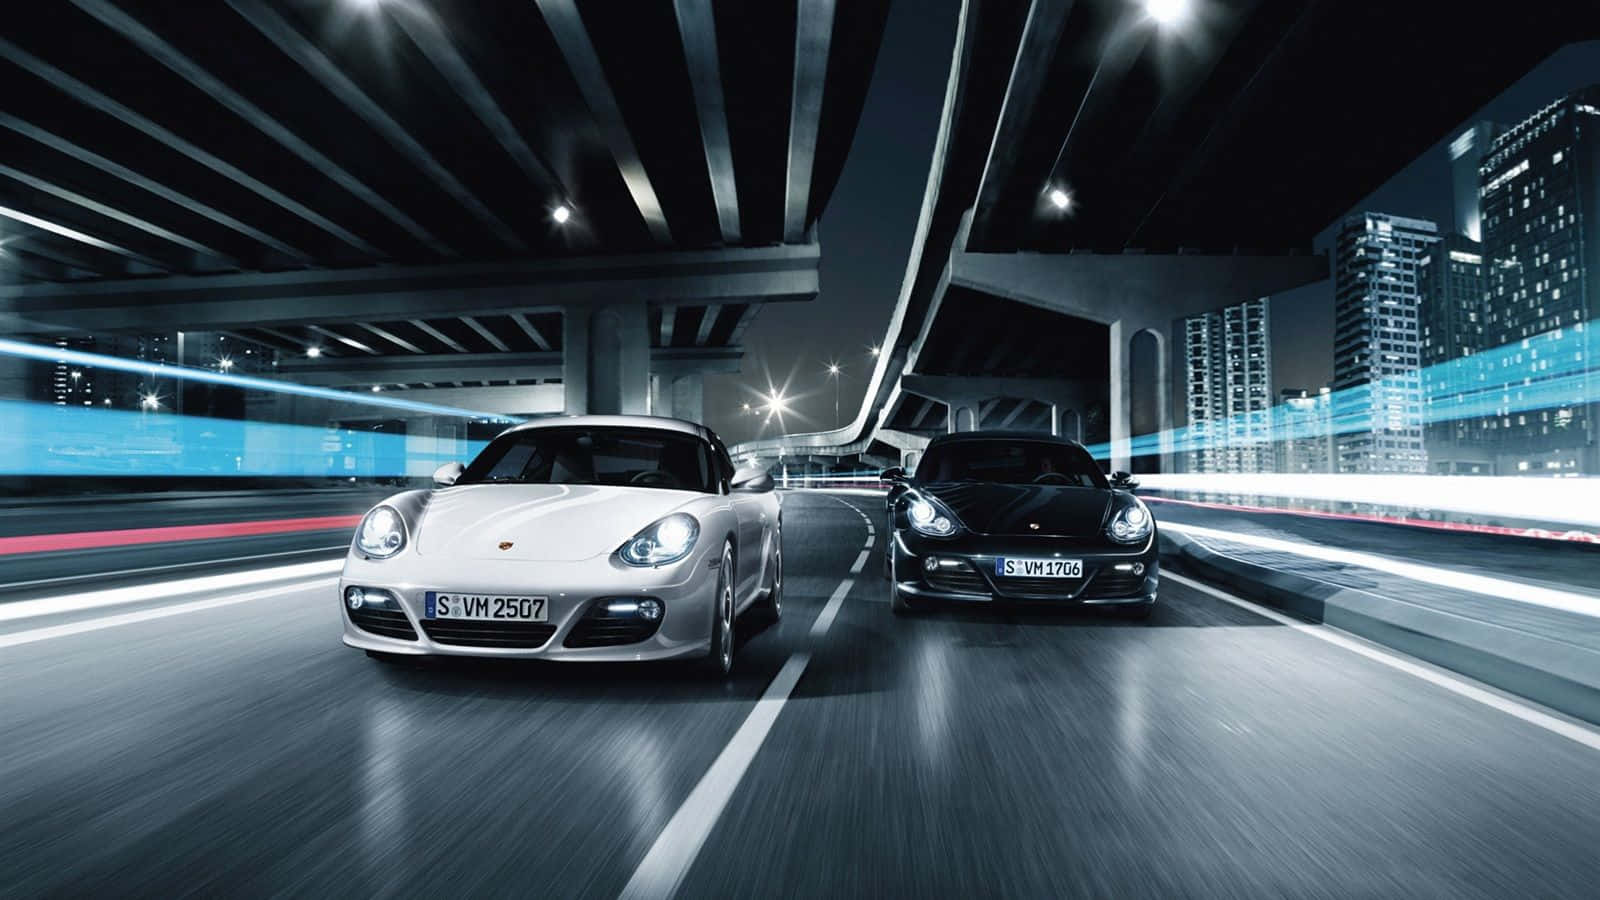 Porsche Cayman S - Ad Wallpaper